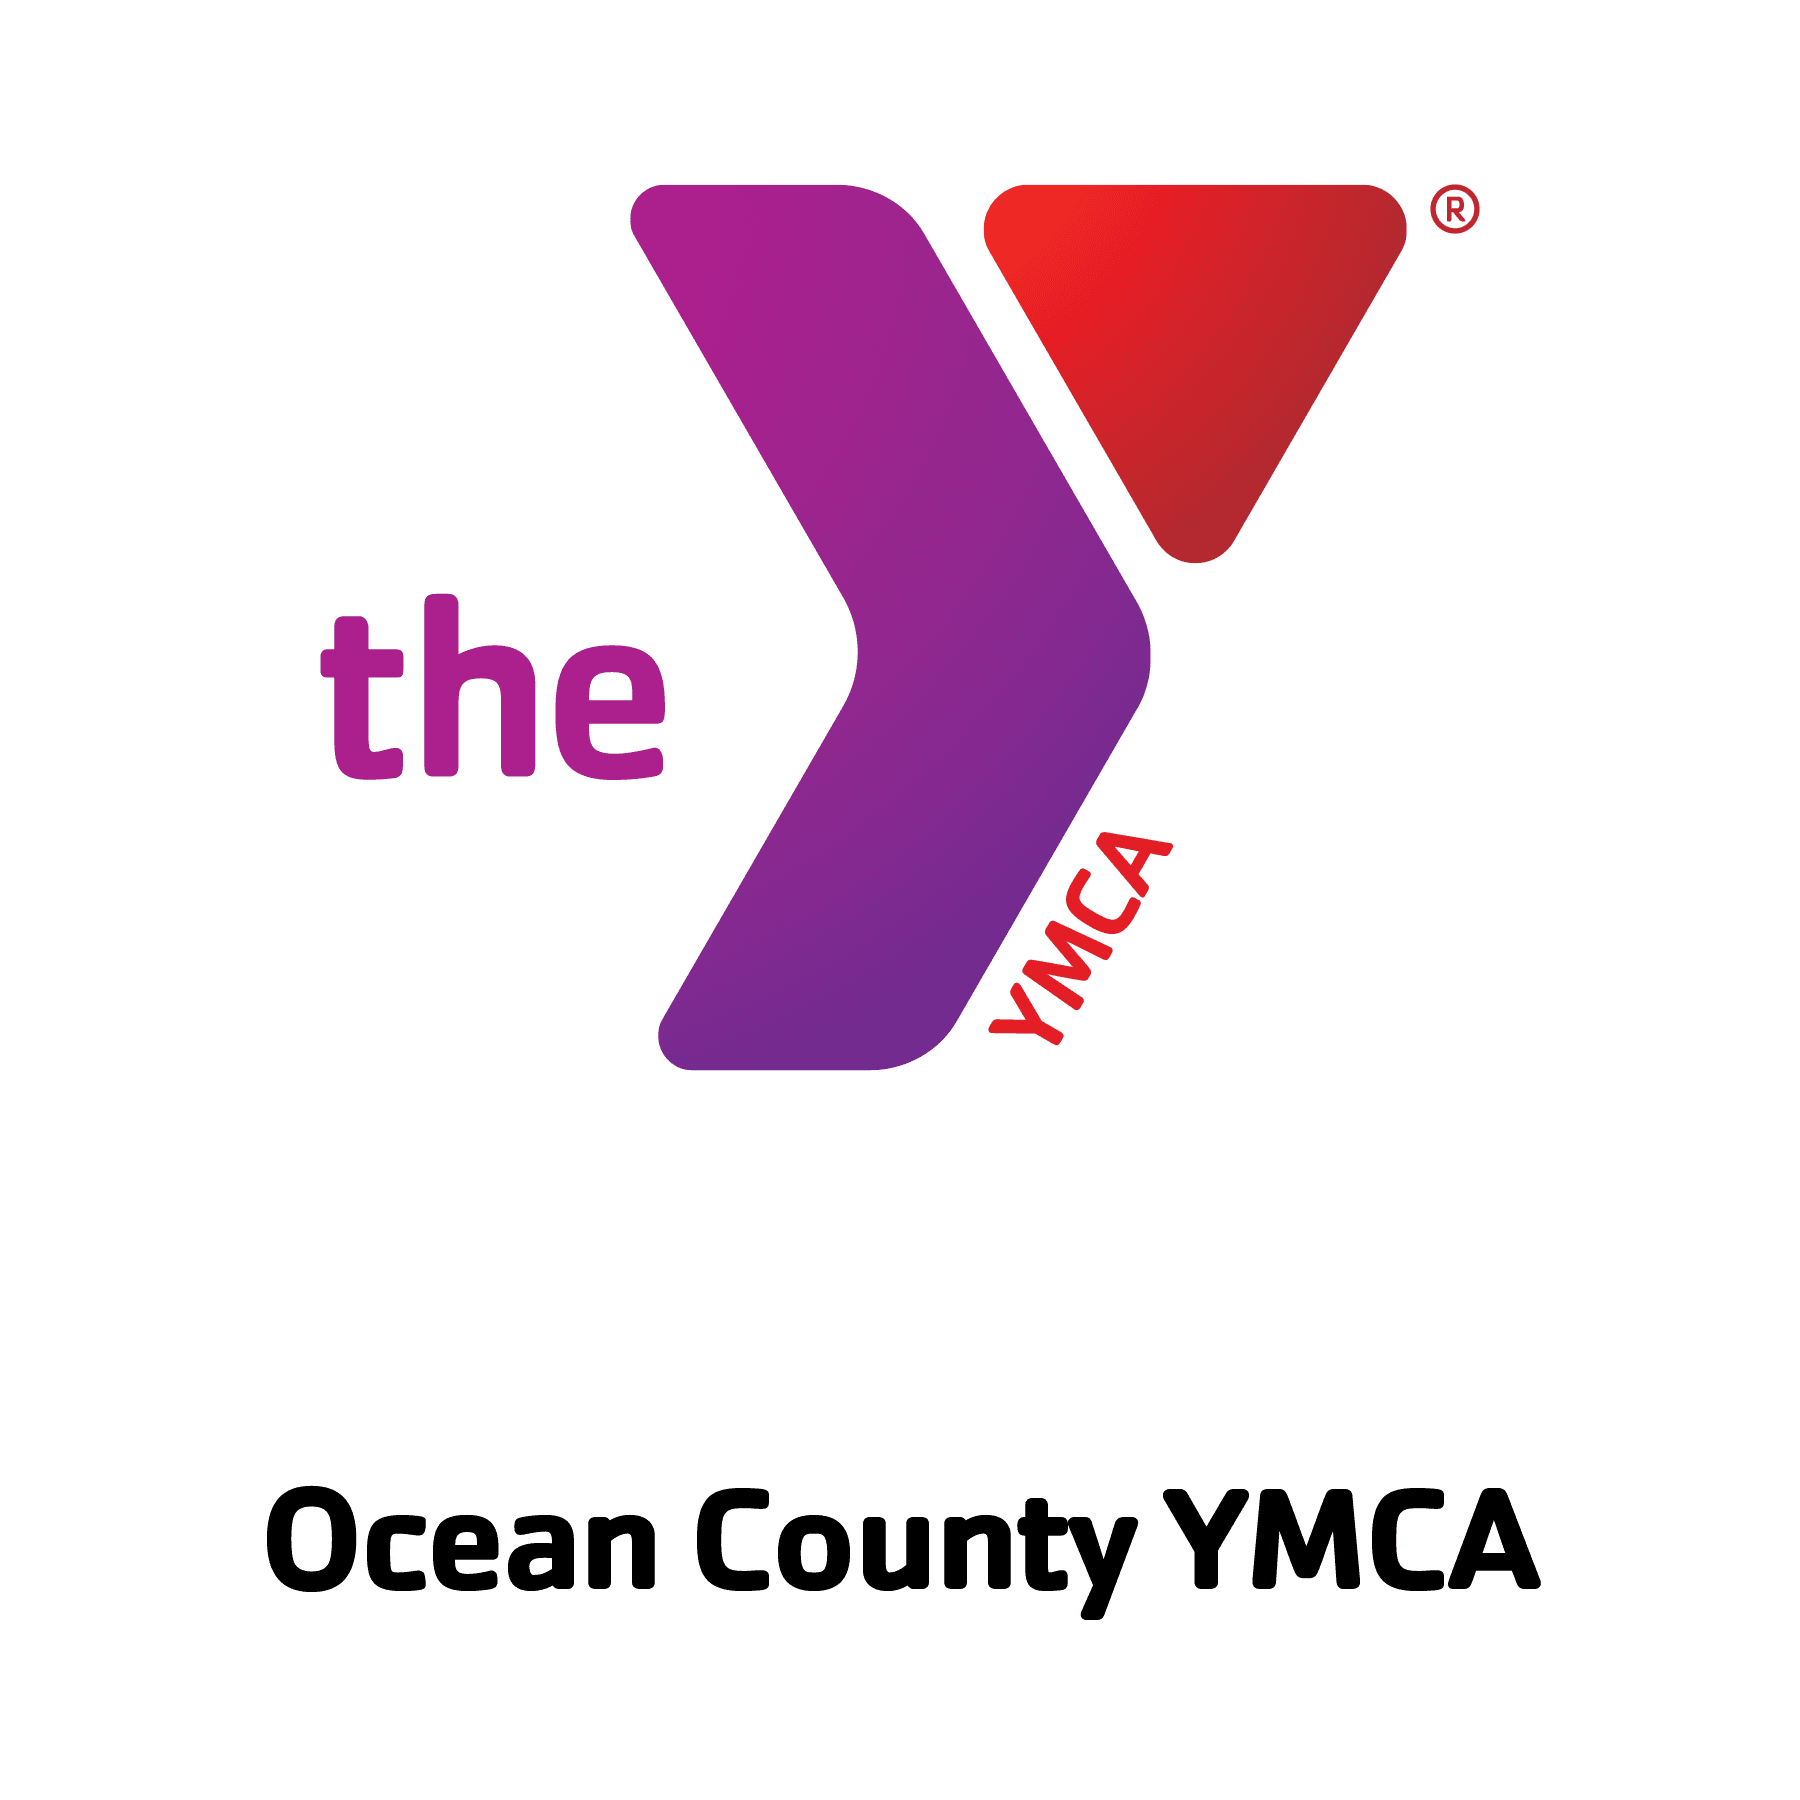 Ocean County YMCA 01